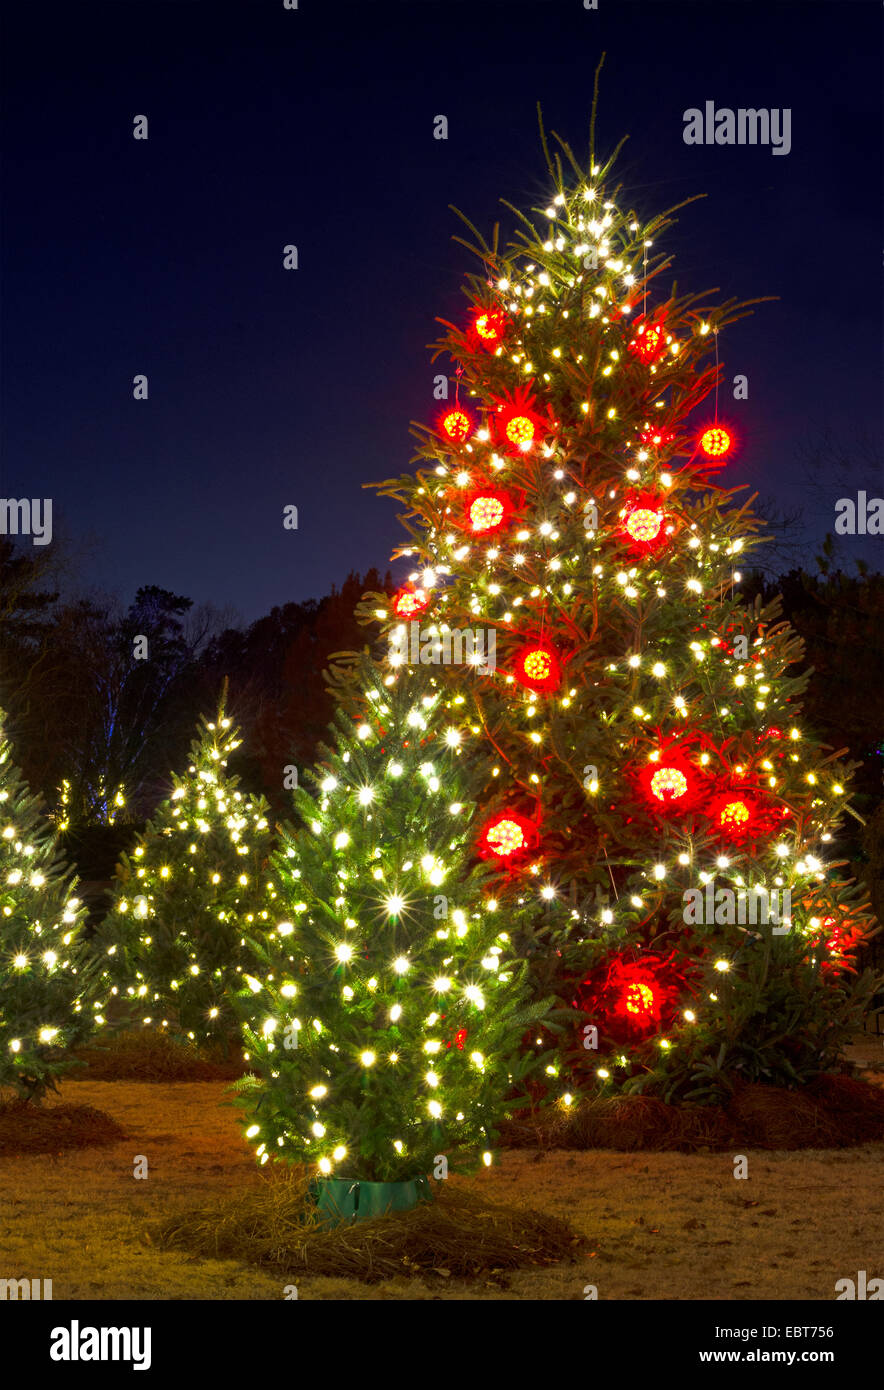 Les arbres de Noël en plein air ont été décorées avec des lumières blanches et rouges et tourné contre un brillant ciel bleu. Banque D'Images